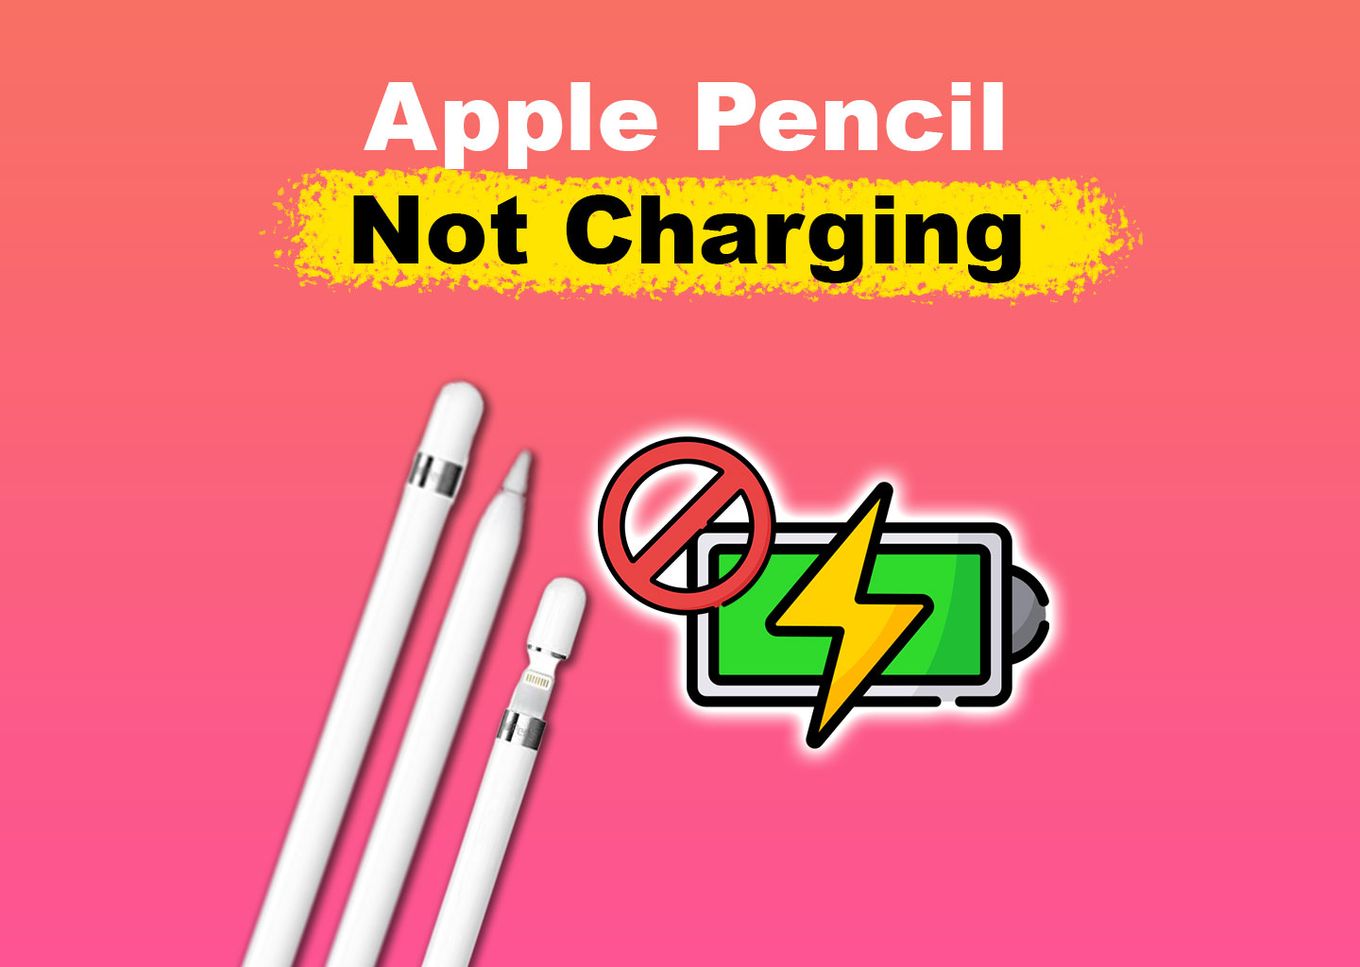 Fix Apple Pencil not charging